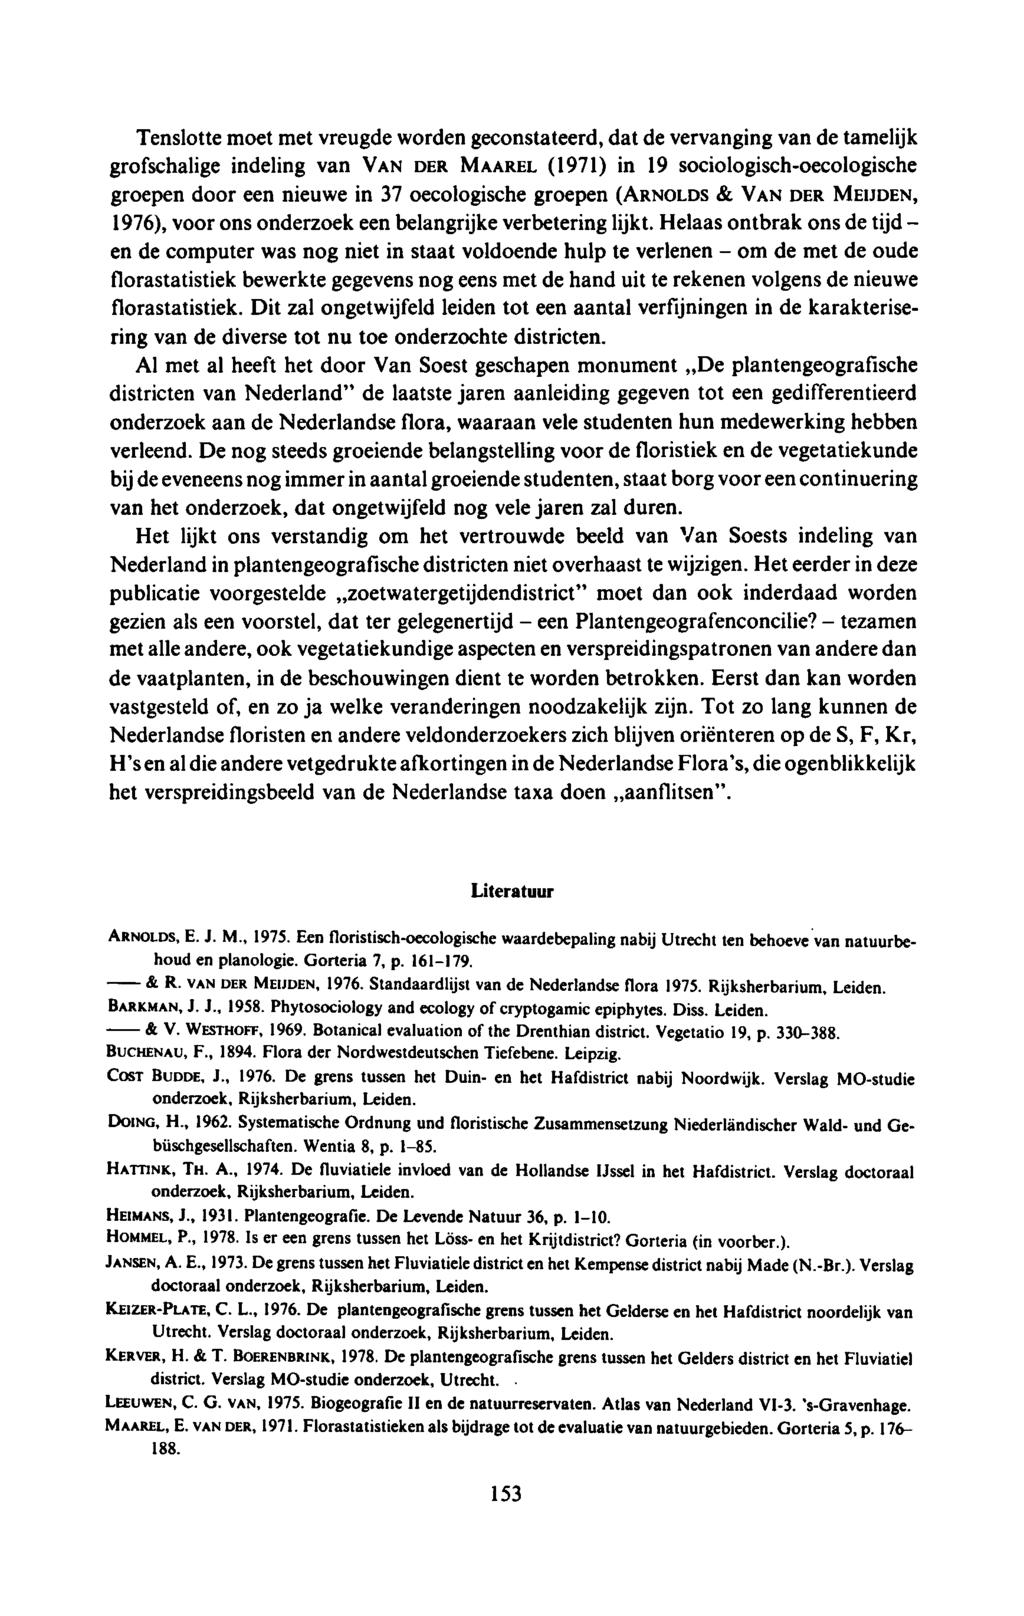 & V. WESTHOFF, 1969. Botanical evaluation of the Drenthian district. Vegetatio 19, p. 330388. HOMMEL, P 1978. Is er een grens tussen het Löss en het Krijtdistrict? Gorteria (in voorber.).